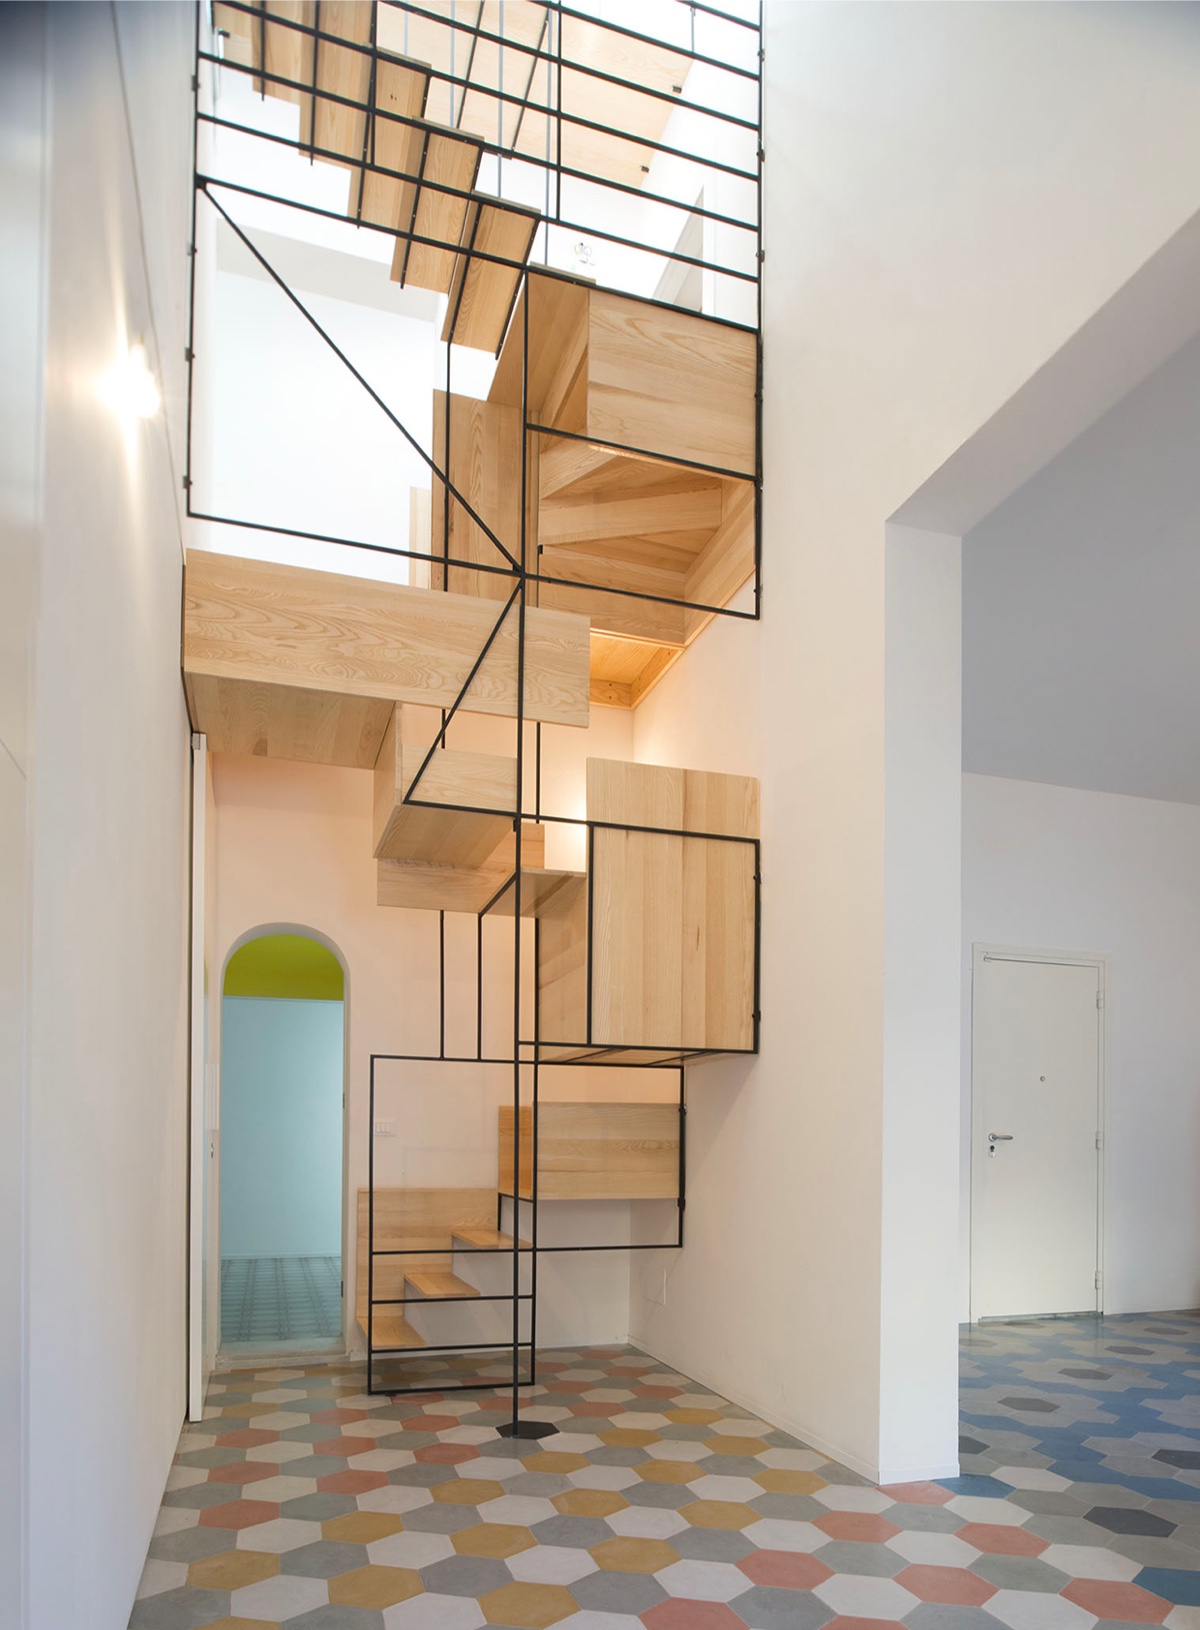 Ý tưởng thiết kế cầu thang cho nhà hiện đại